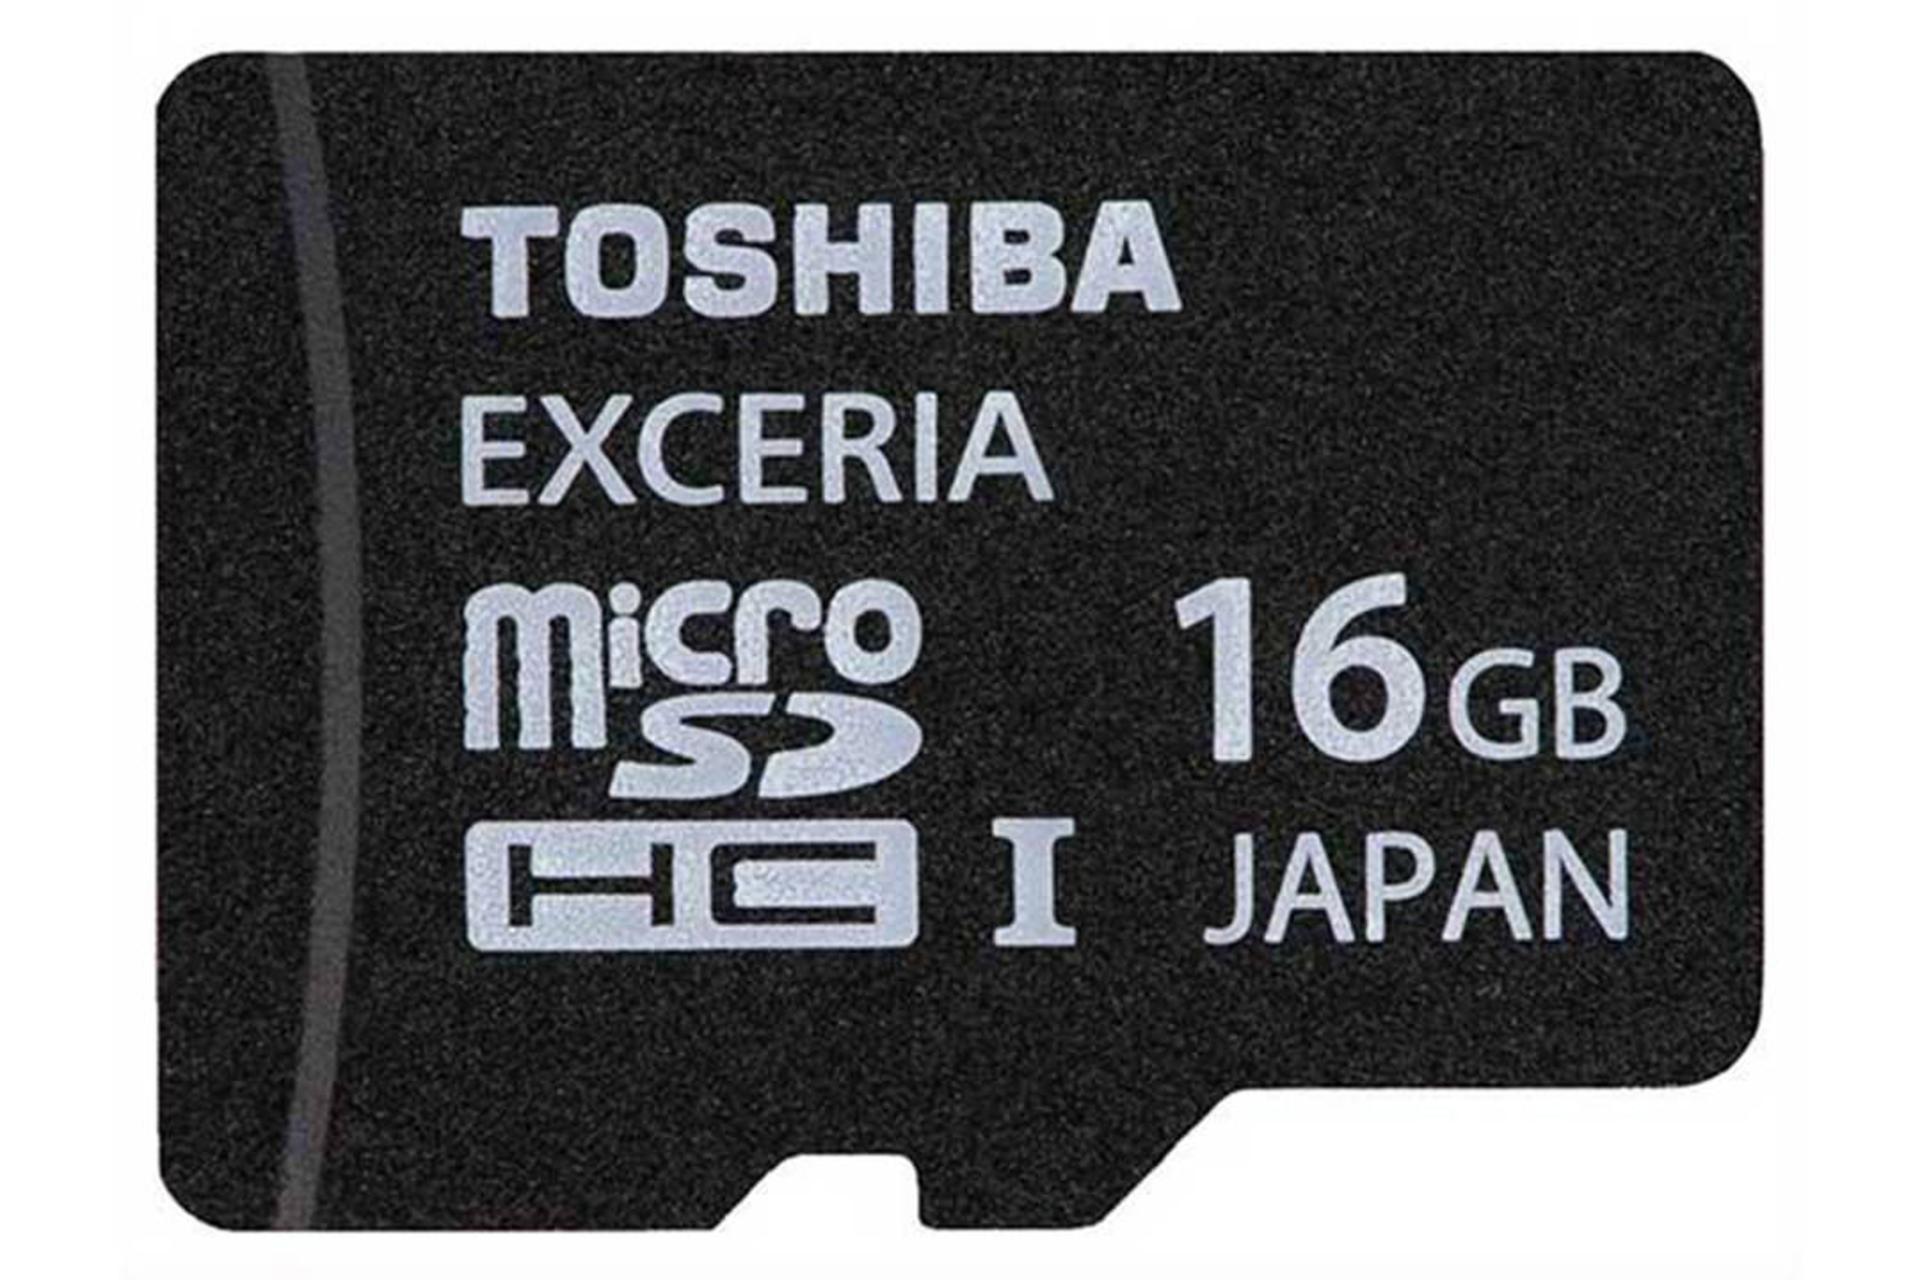 مرجع متخصصين ايران Toshiba Exceria Type HD microSDHC Class 10 UHS-I U1 16GB